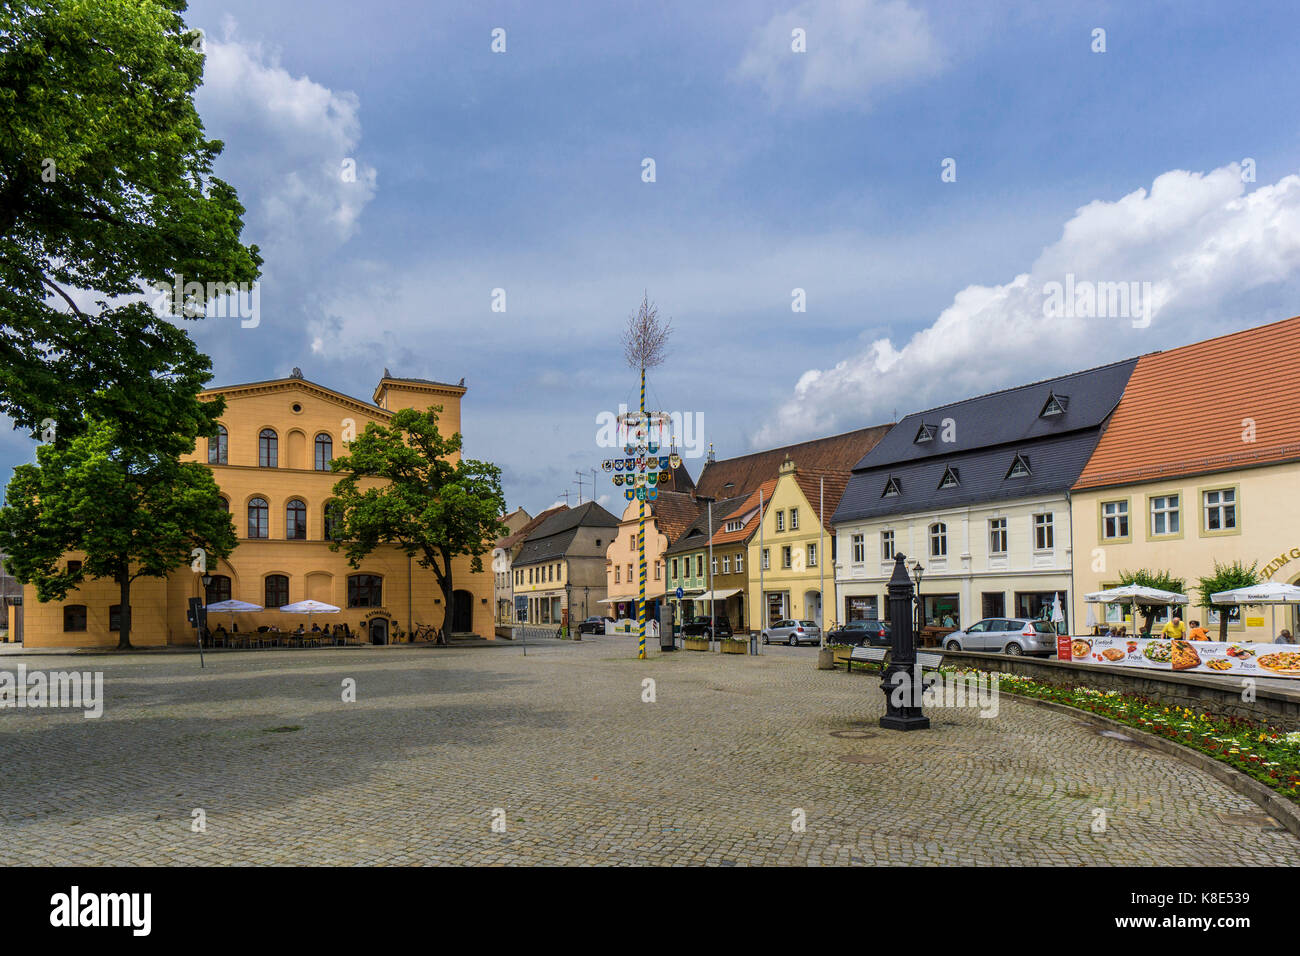 Luckau, le marché, l'hôtel de ville et de maisons de ville, Marktplatz, rathaus und bürgerhaeuser Banque D'Images